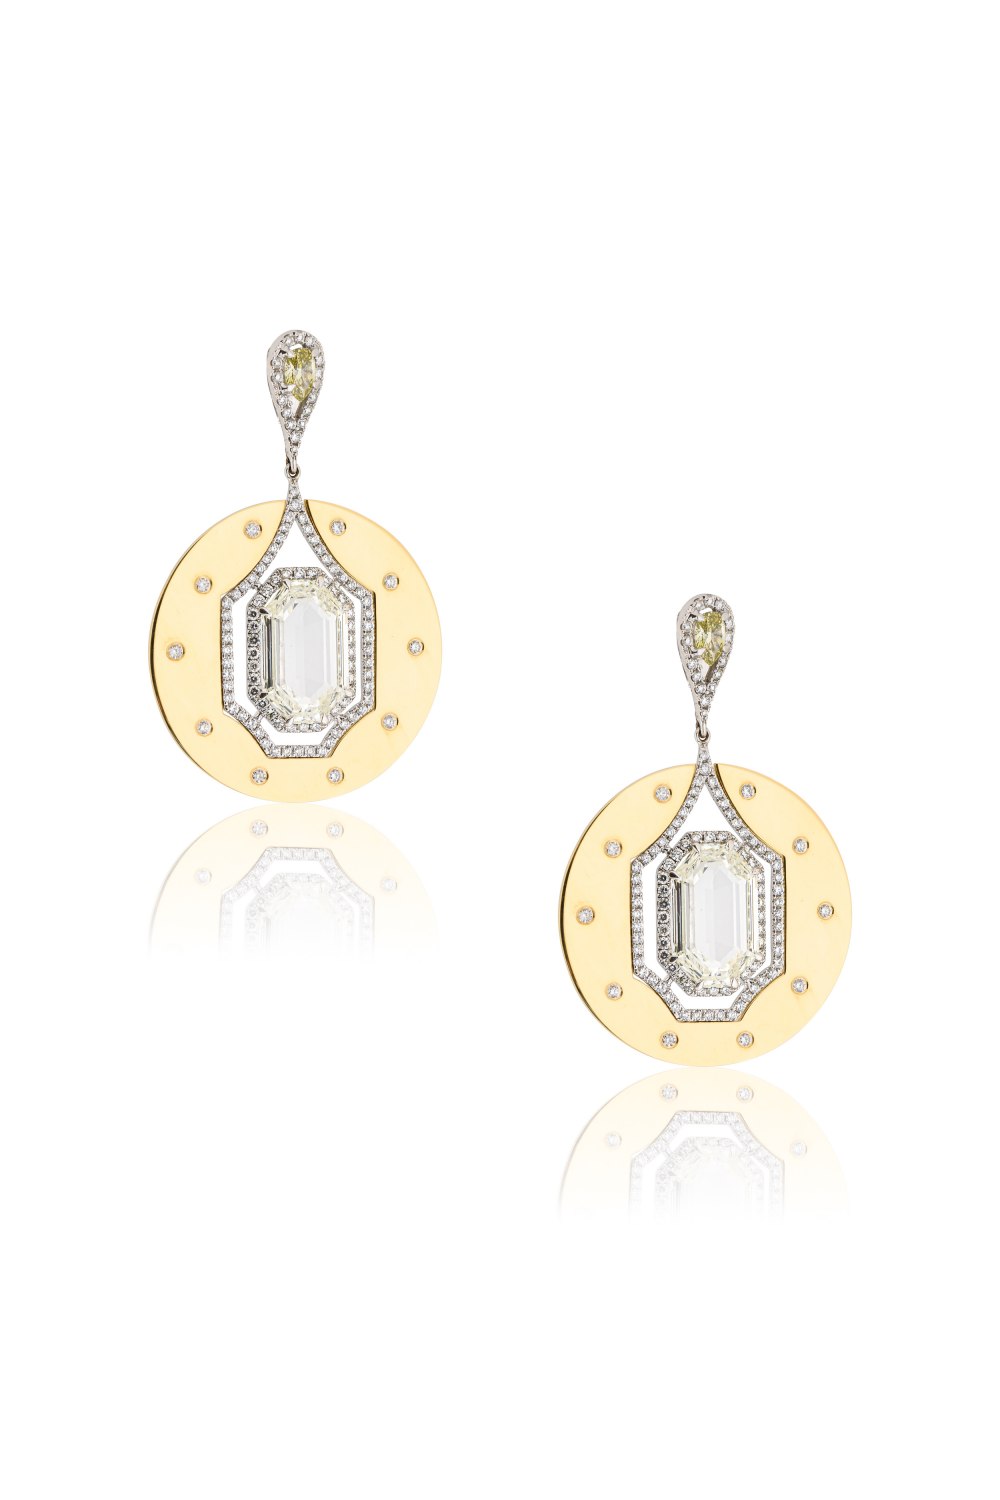 ANASTASIA KESSARIS - Geometric Diamond Statement Earrings